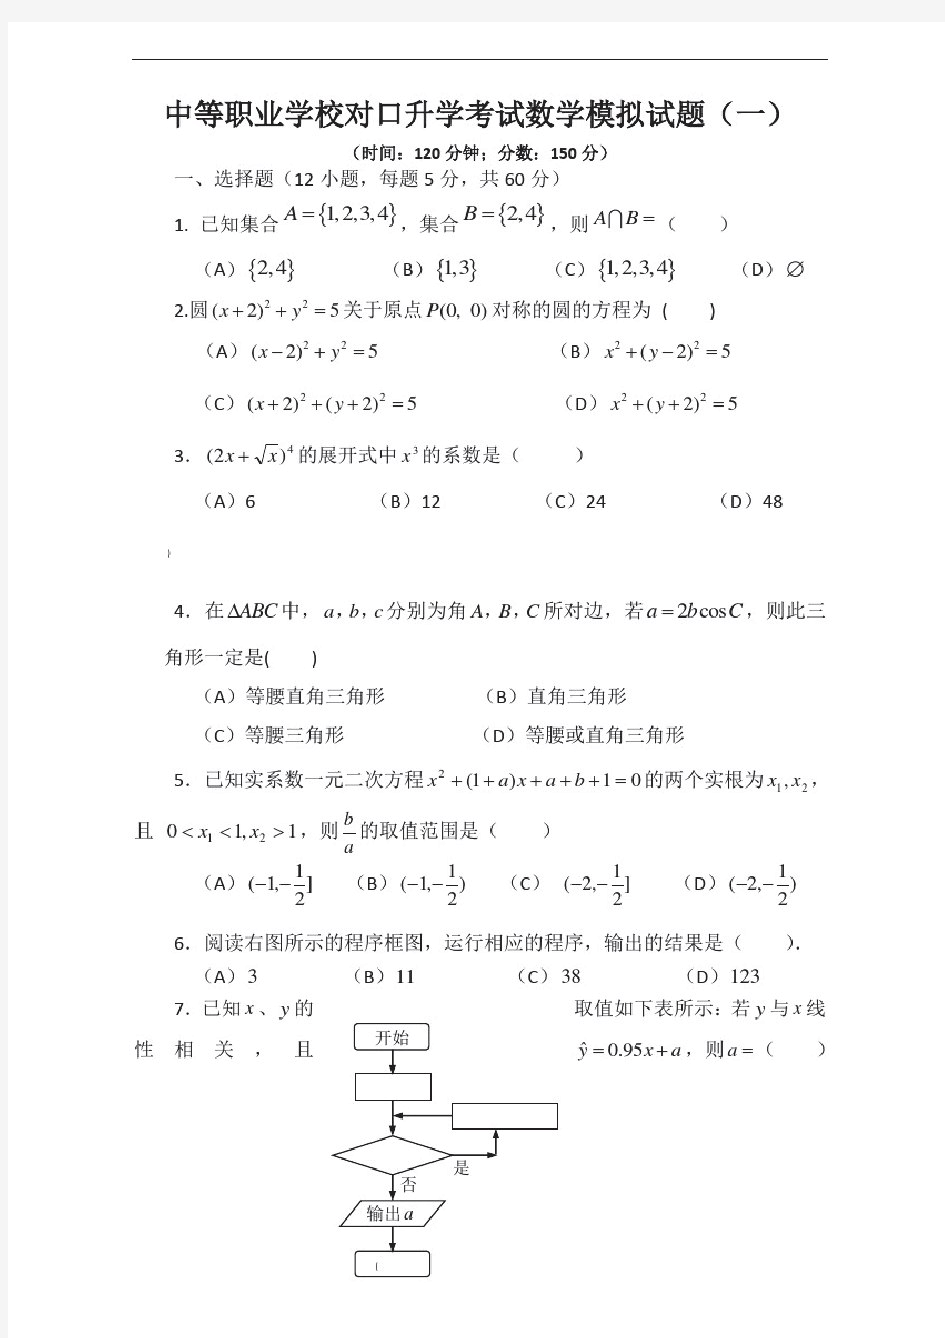 中等职业学校对口升学考试数学模拟试题(一)